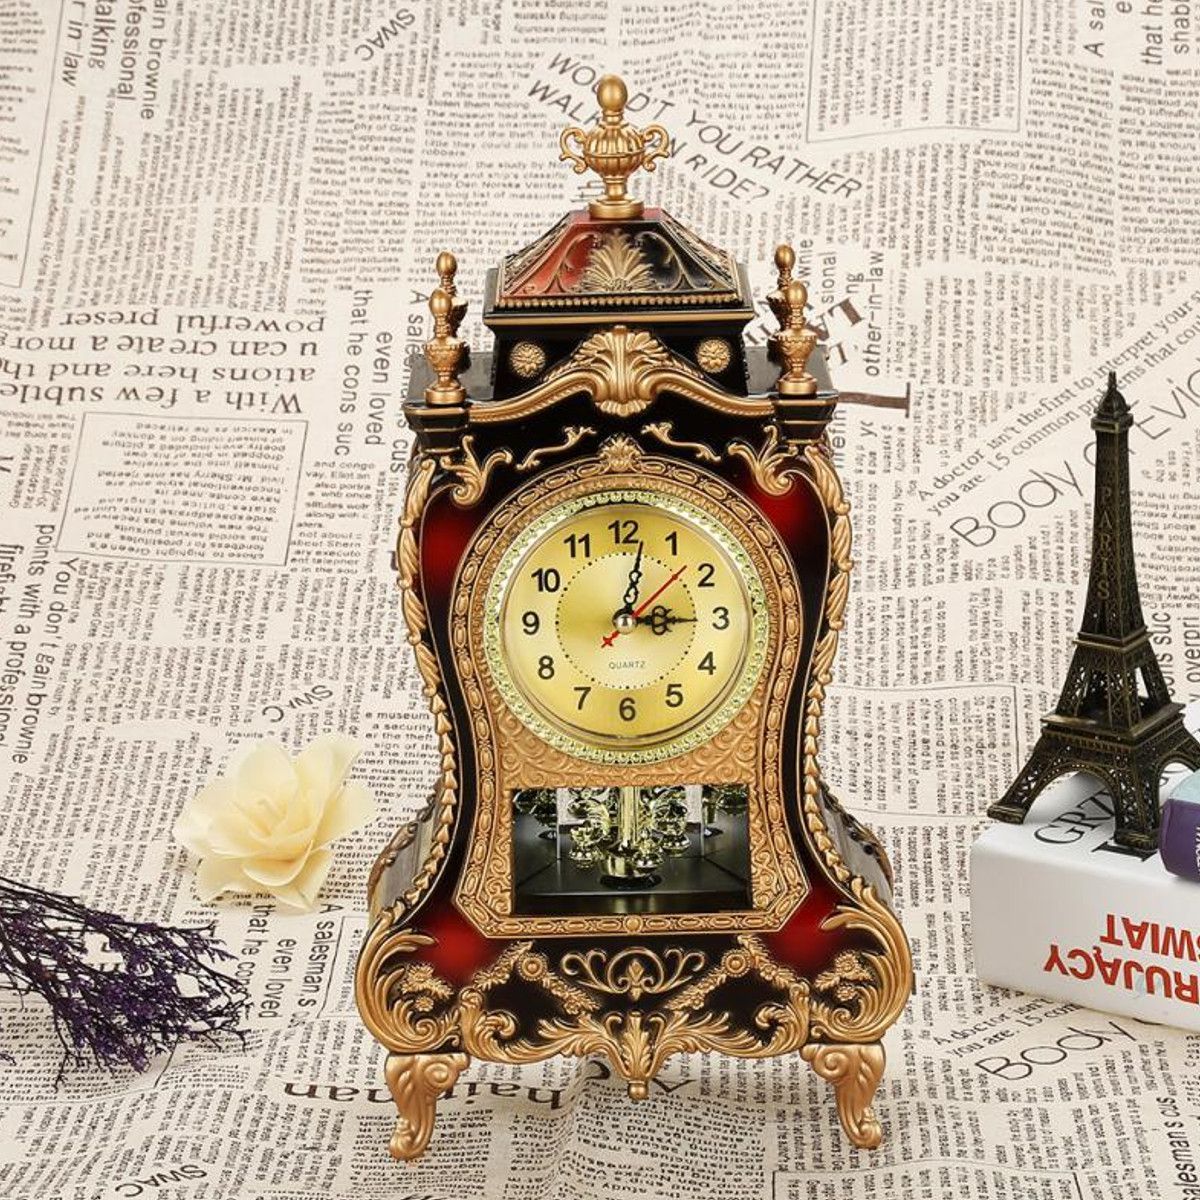 Desk-Pendulum-Alarm-Clock-Vintage-Clock-Classical-Cabinet-Creative-Imperial-Furnishing-Sit-Pendulum--1605565